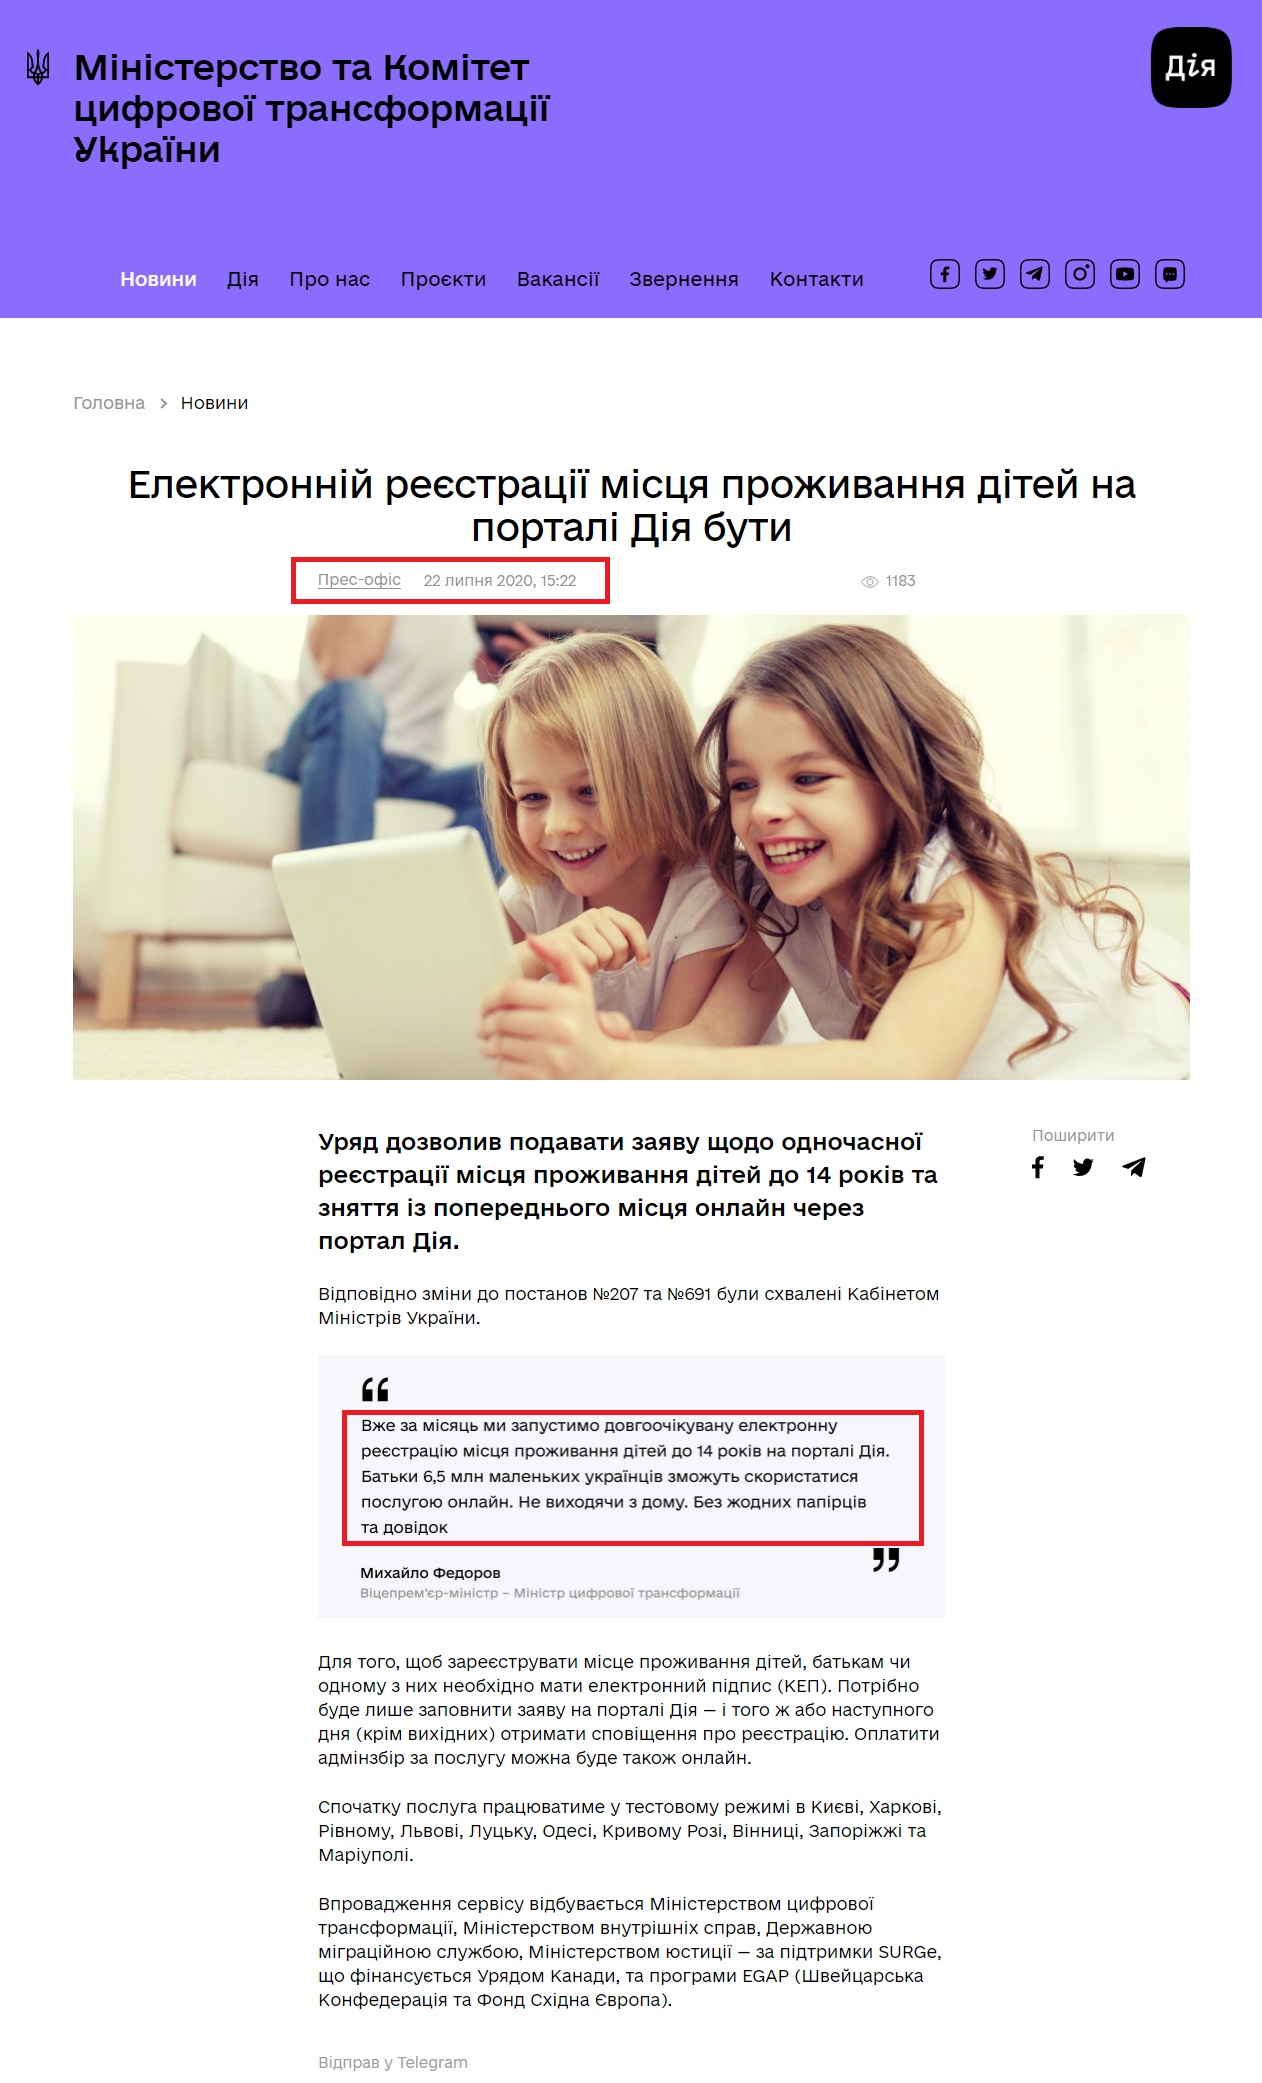 https://thedigital.gov.ua/news/elektronniy-reestratsii-mistsya-prozhivannya-ditey-na-portali-diya-buti